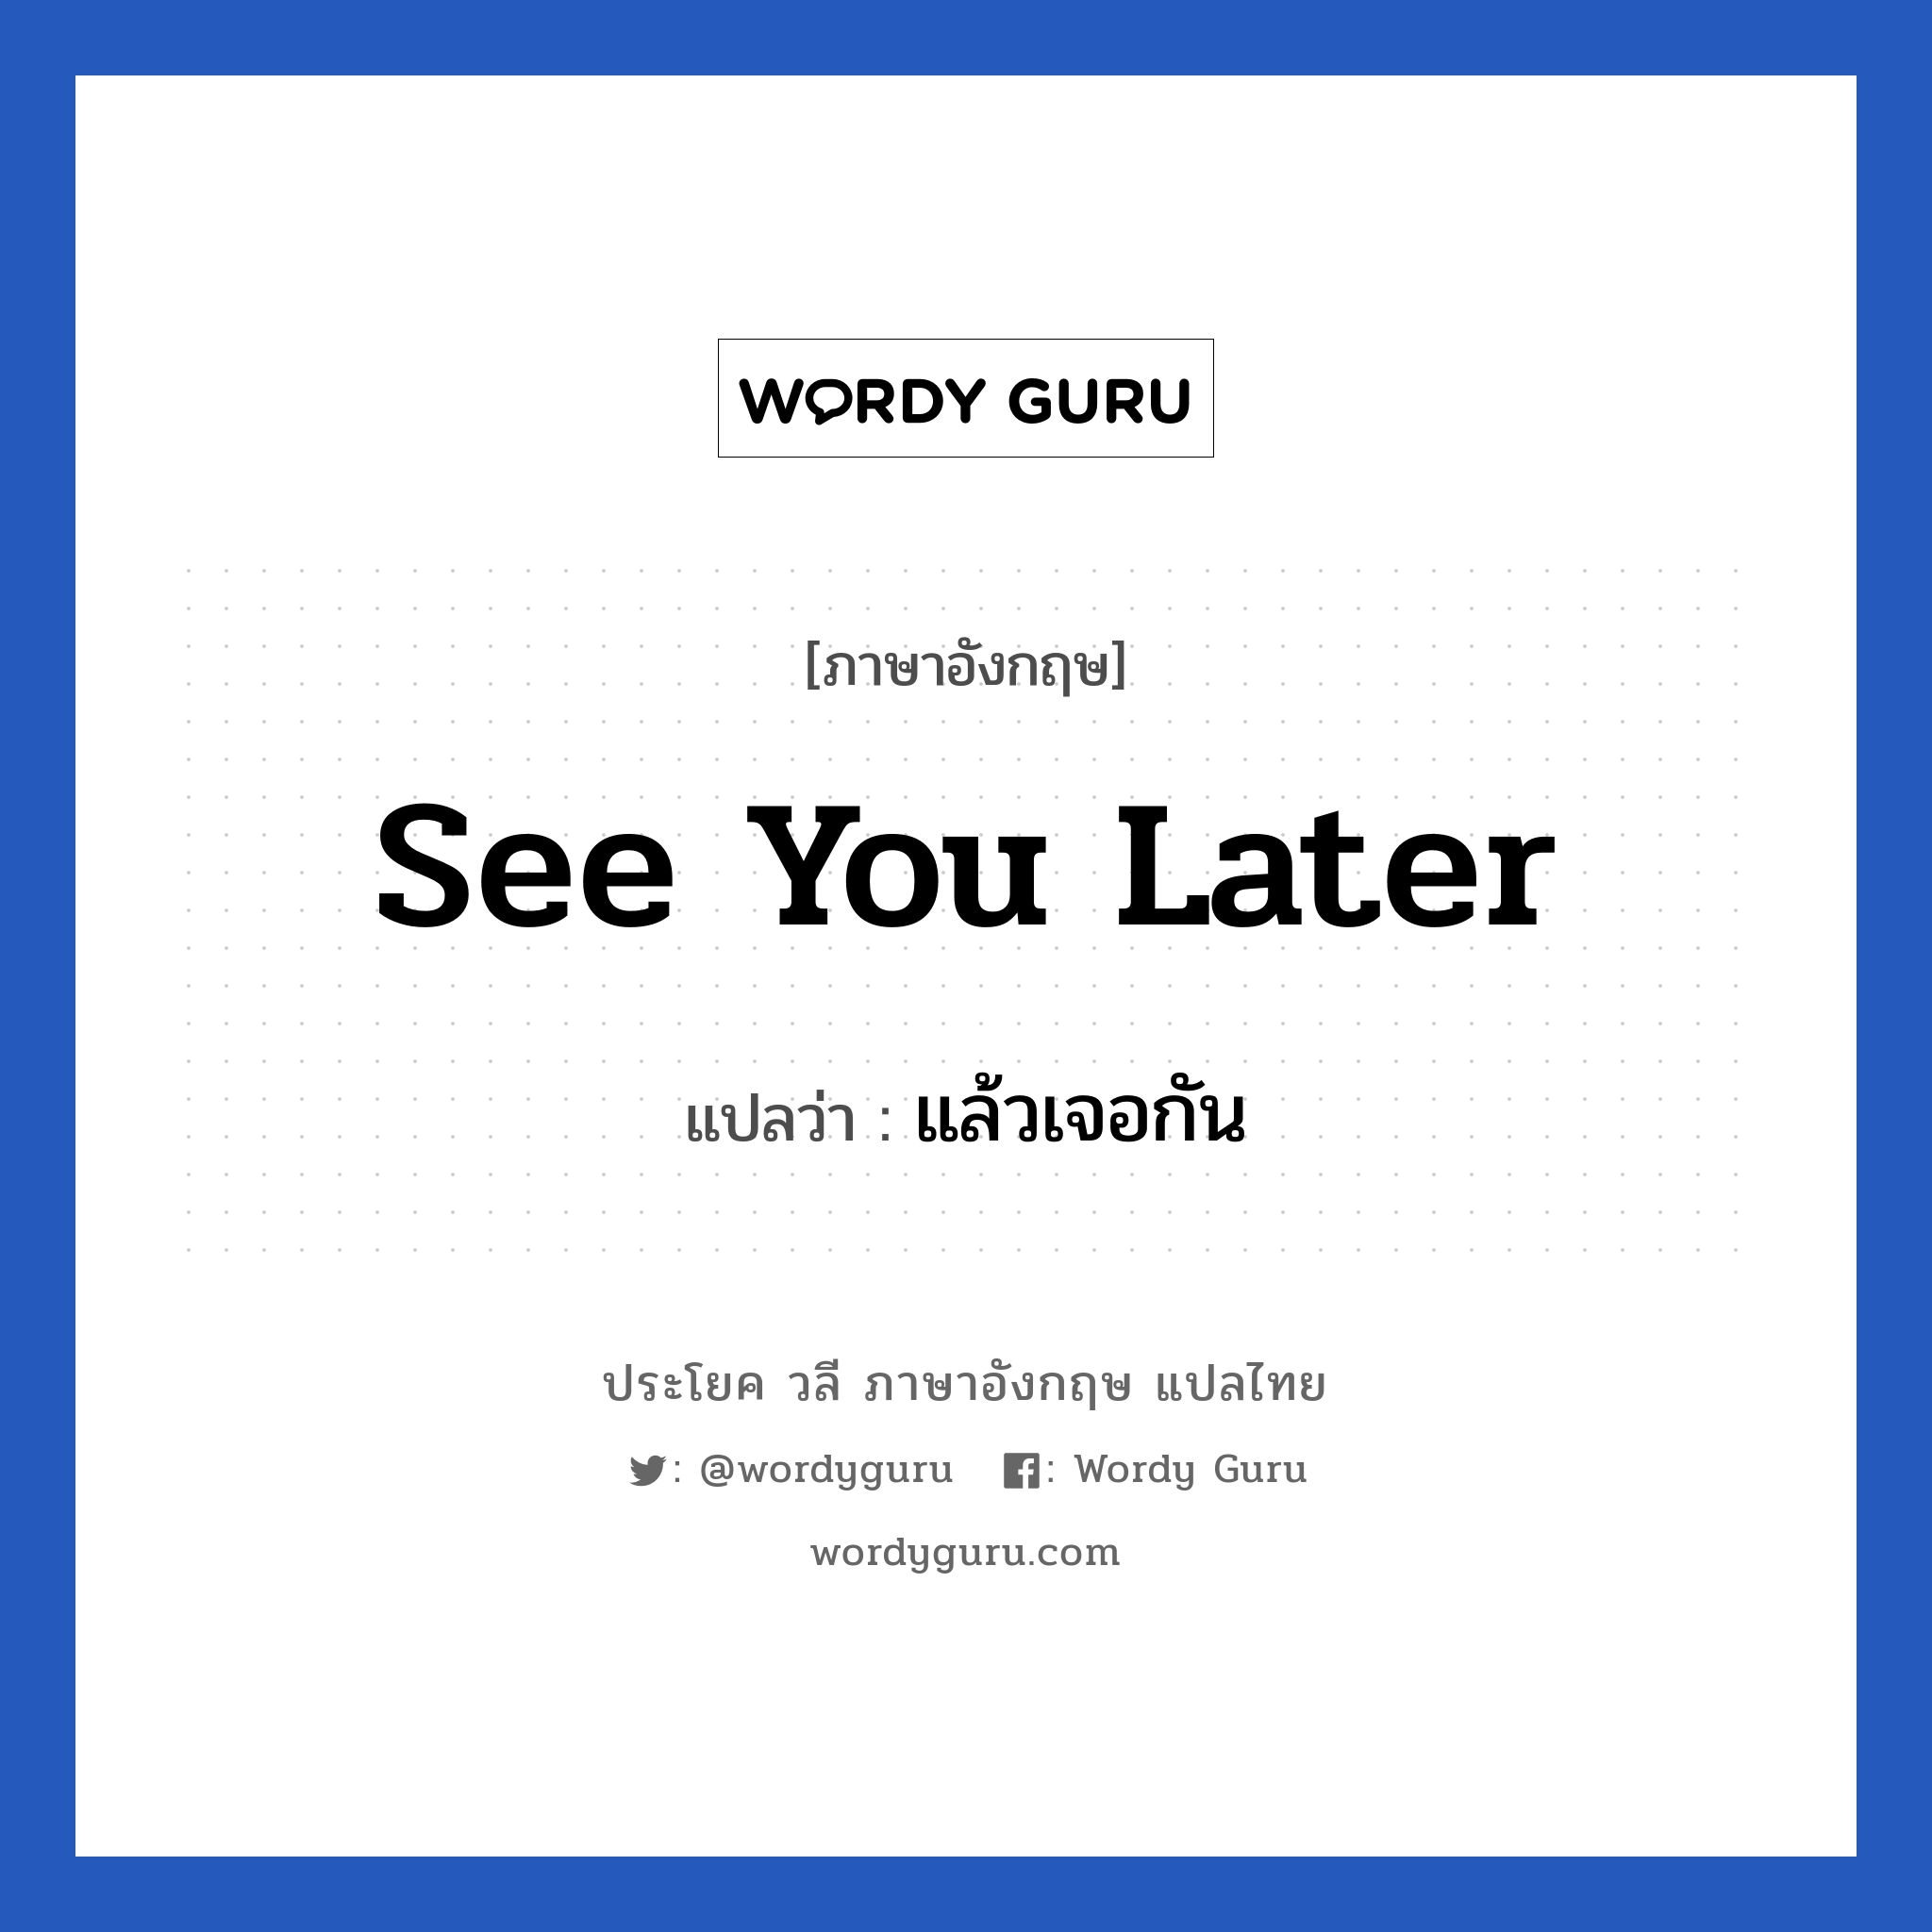 See you later! แปลว่า?, วลีภาษาอังกฤษ See you later แปลว่า แล้วเจอกัน